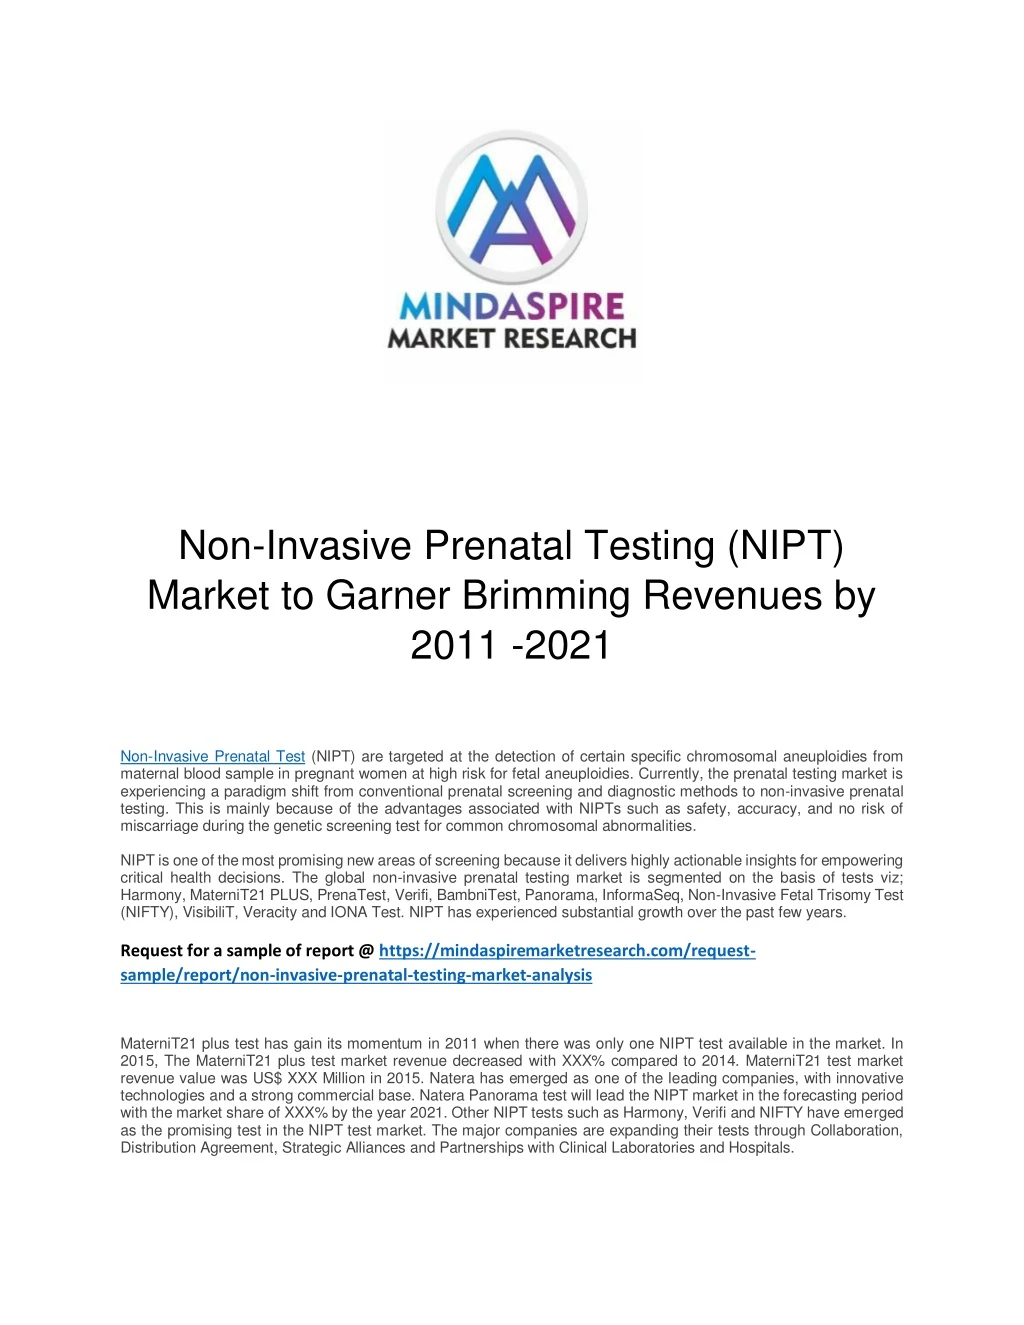 non invasive prenatal testing nipt market